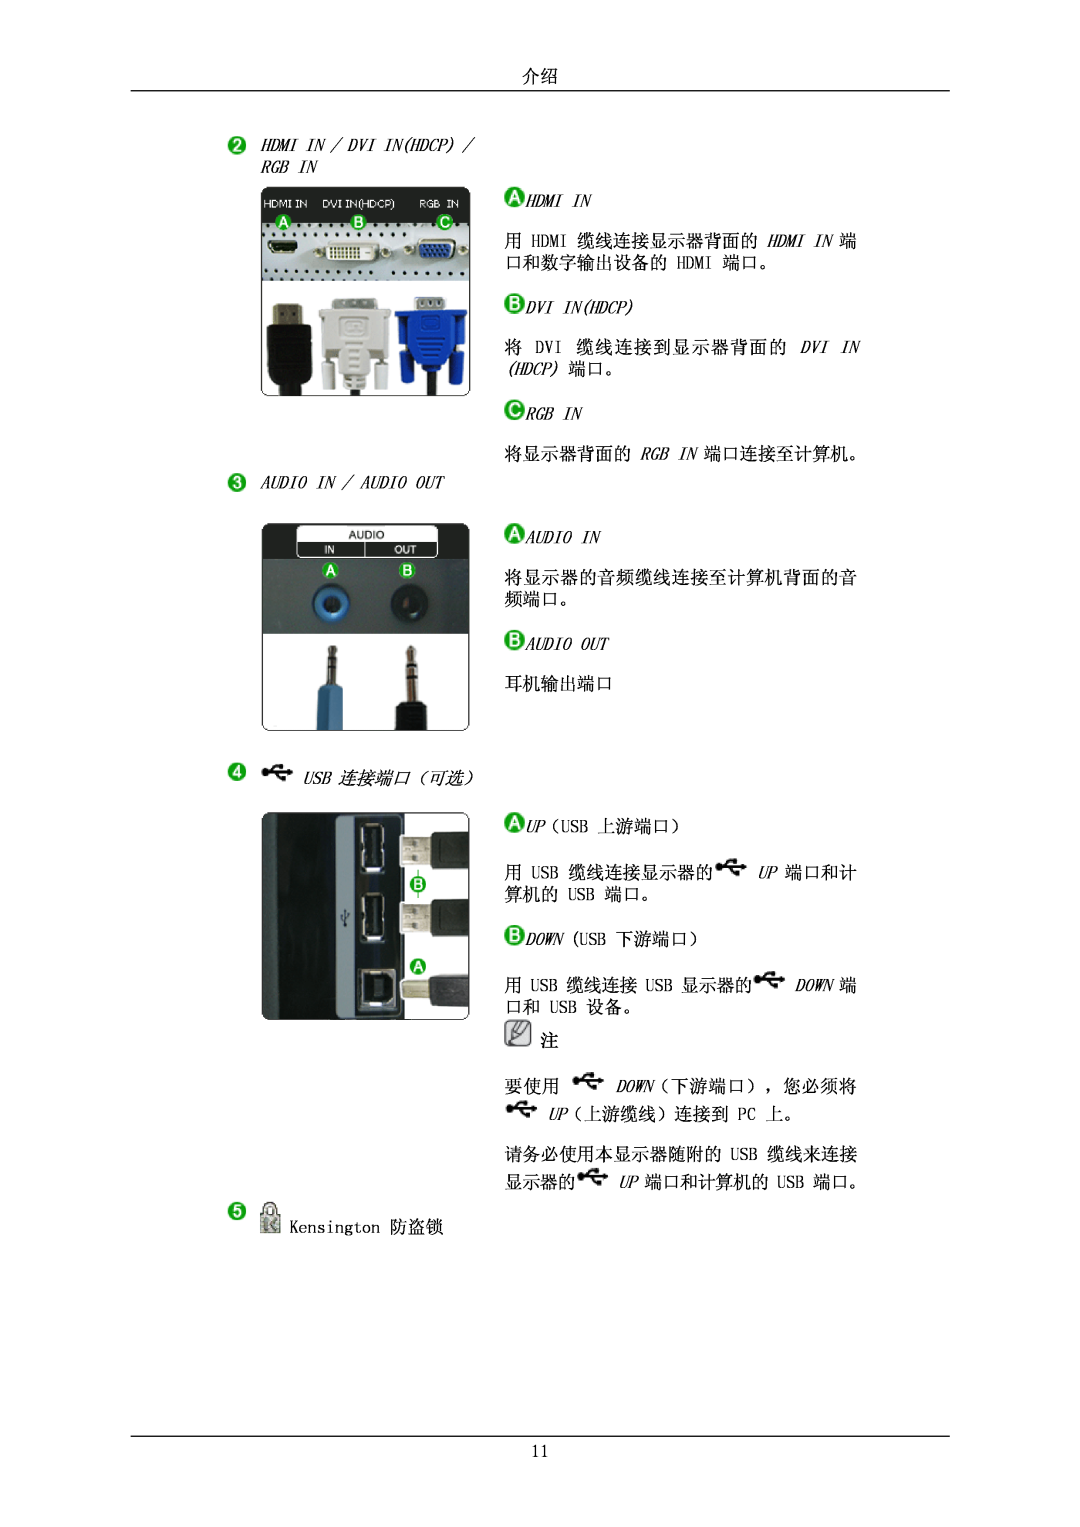 Samsung LS26KIEEFV/EDC, LS26KIERBV/EDC Hdmi In / Dvi Inhdcp Rgb In Hdmi In, Audio In / Audio Out Audio In, Usb 连接端口（可选） 